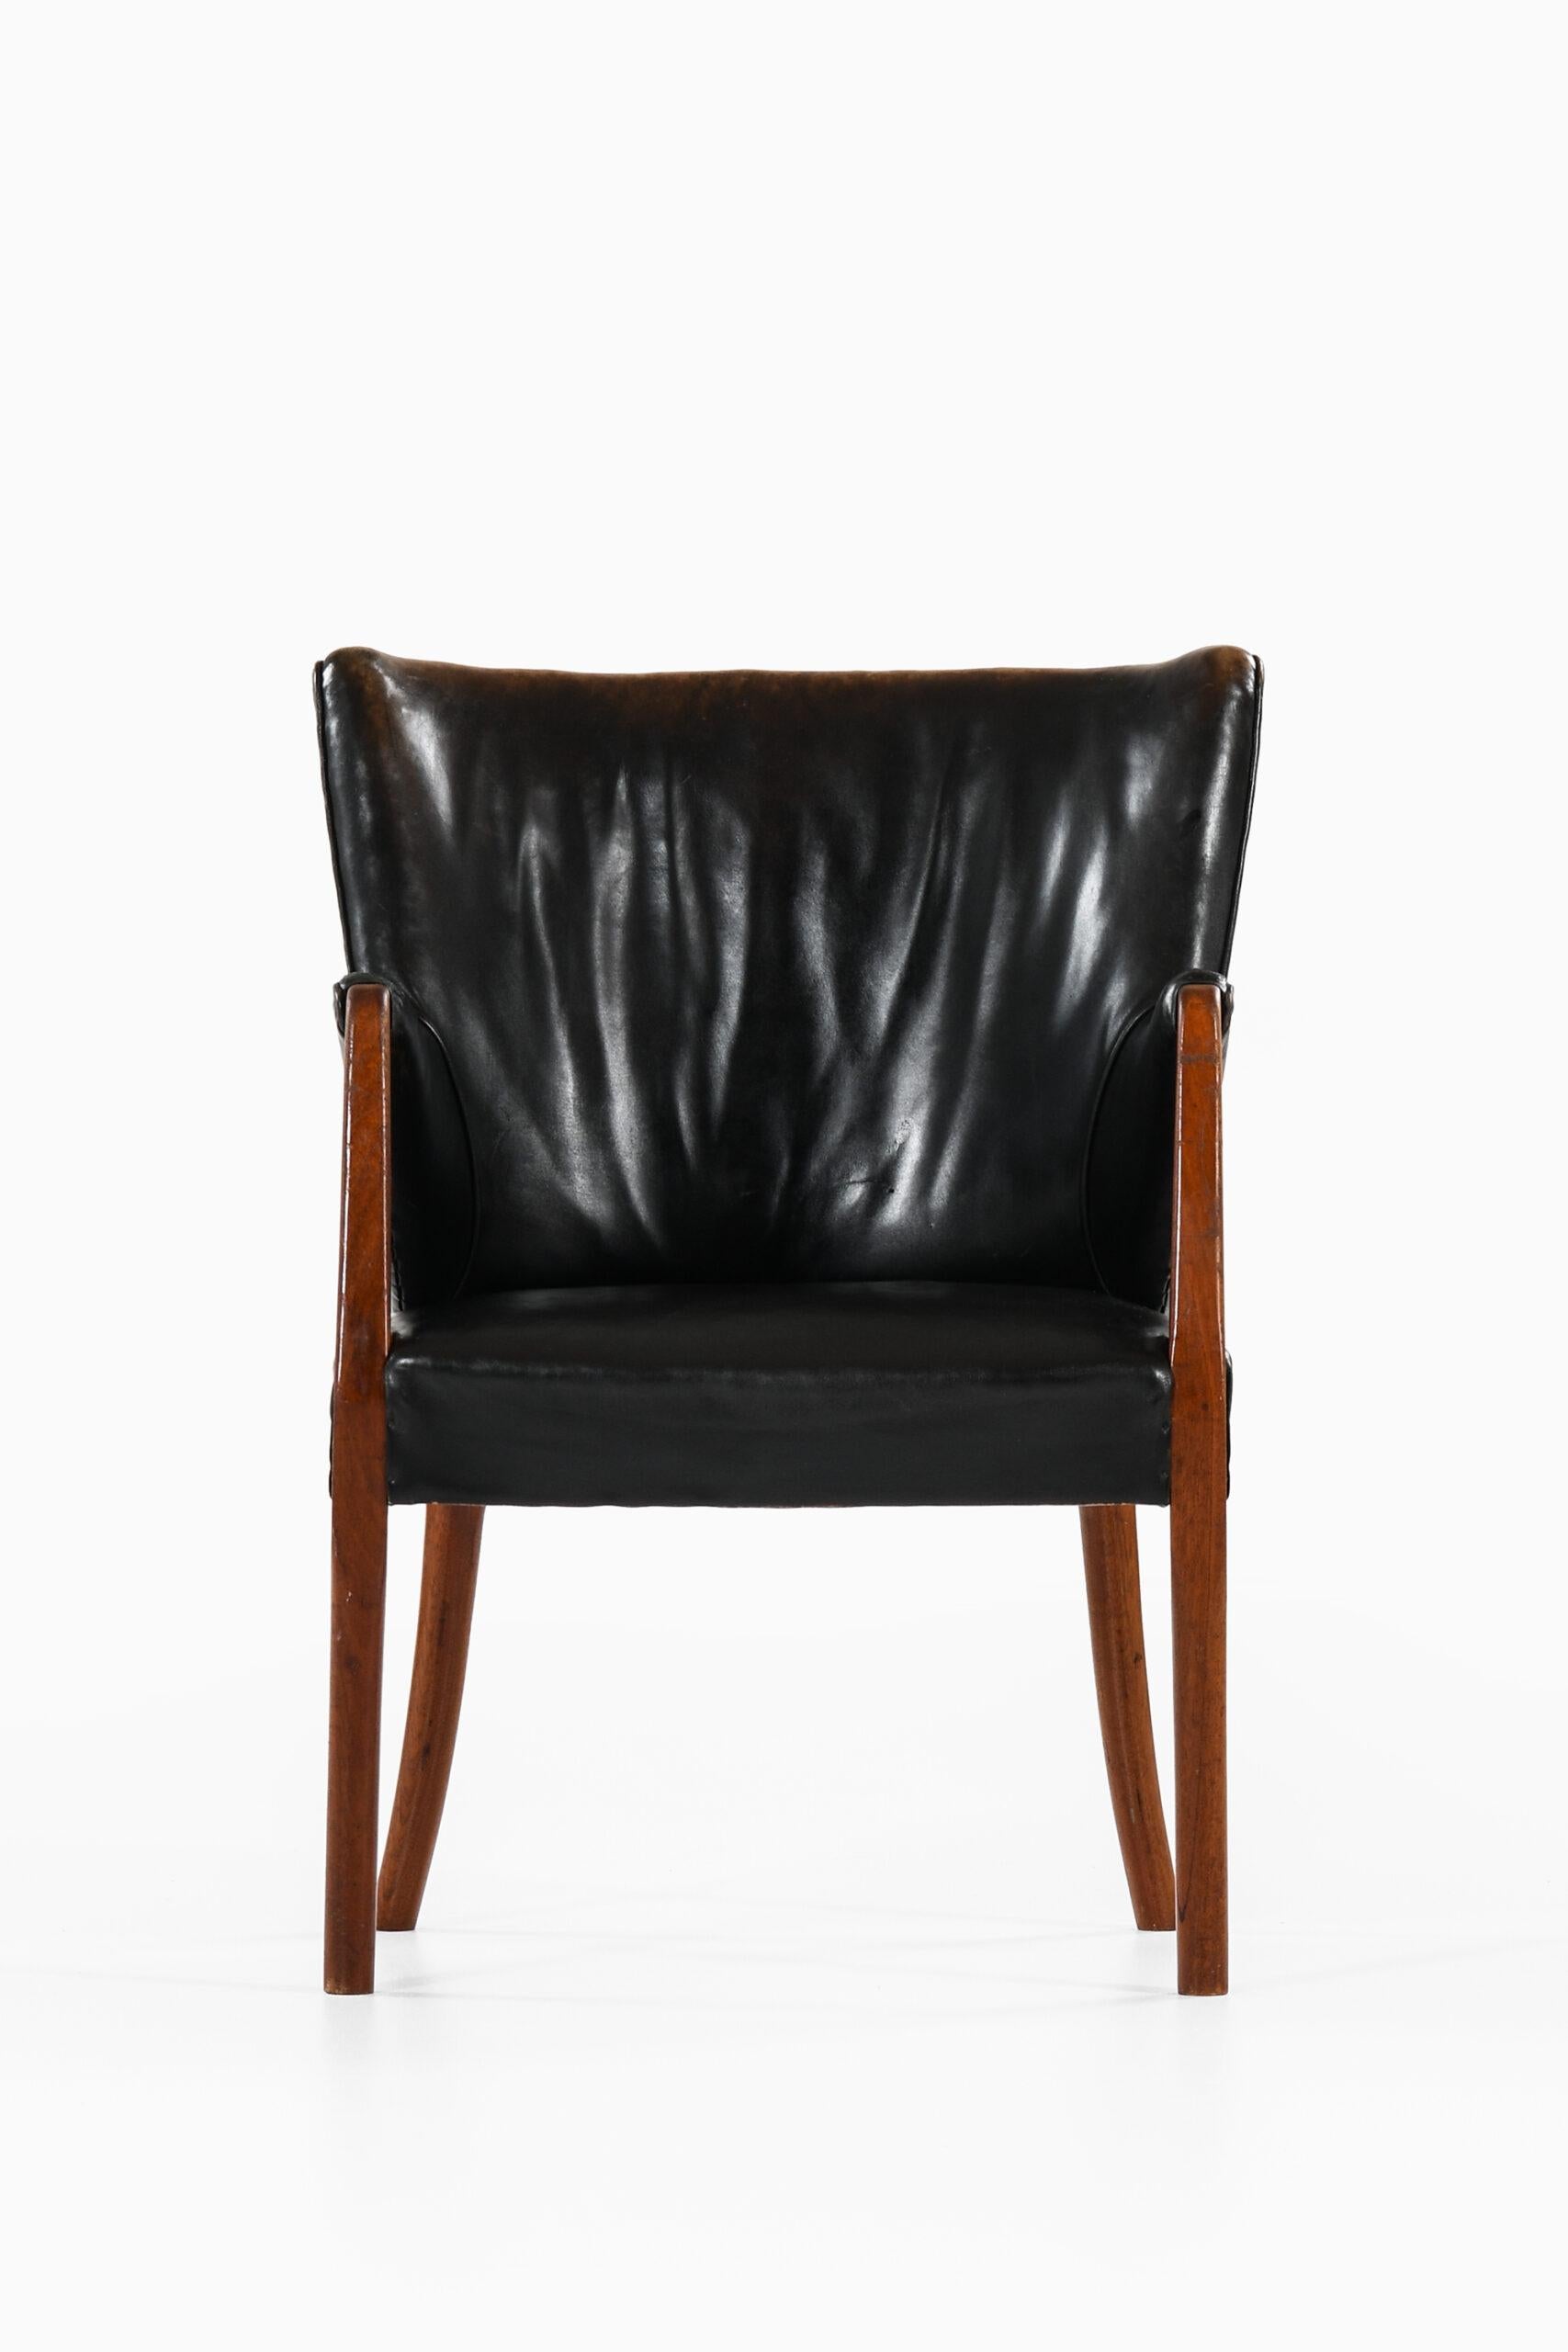 Sehr seltener Sessel, der Peter Hvidt & Orla Mølgaard-Nielsen zugeschrieben wird. Wahrscheinlich von Gustav Bertelsen in Dänemark hergestellt.